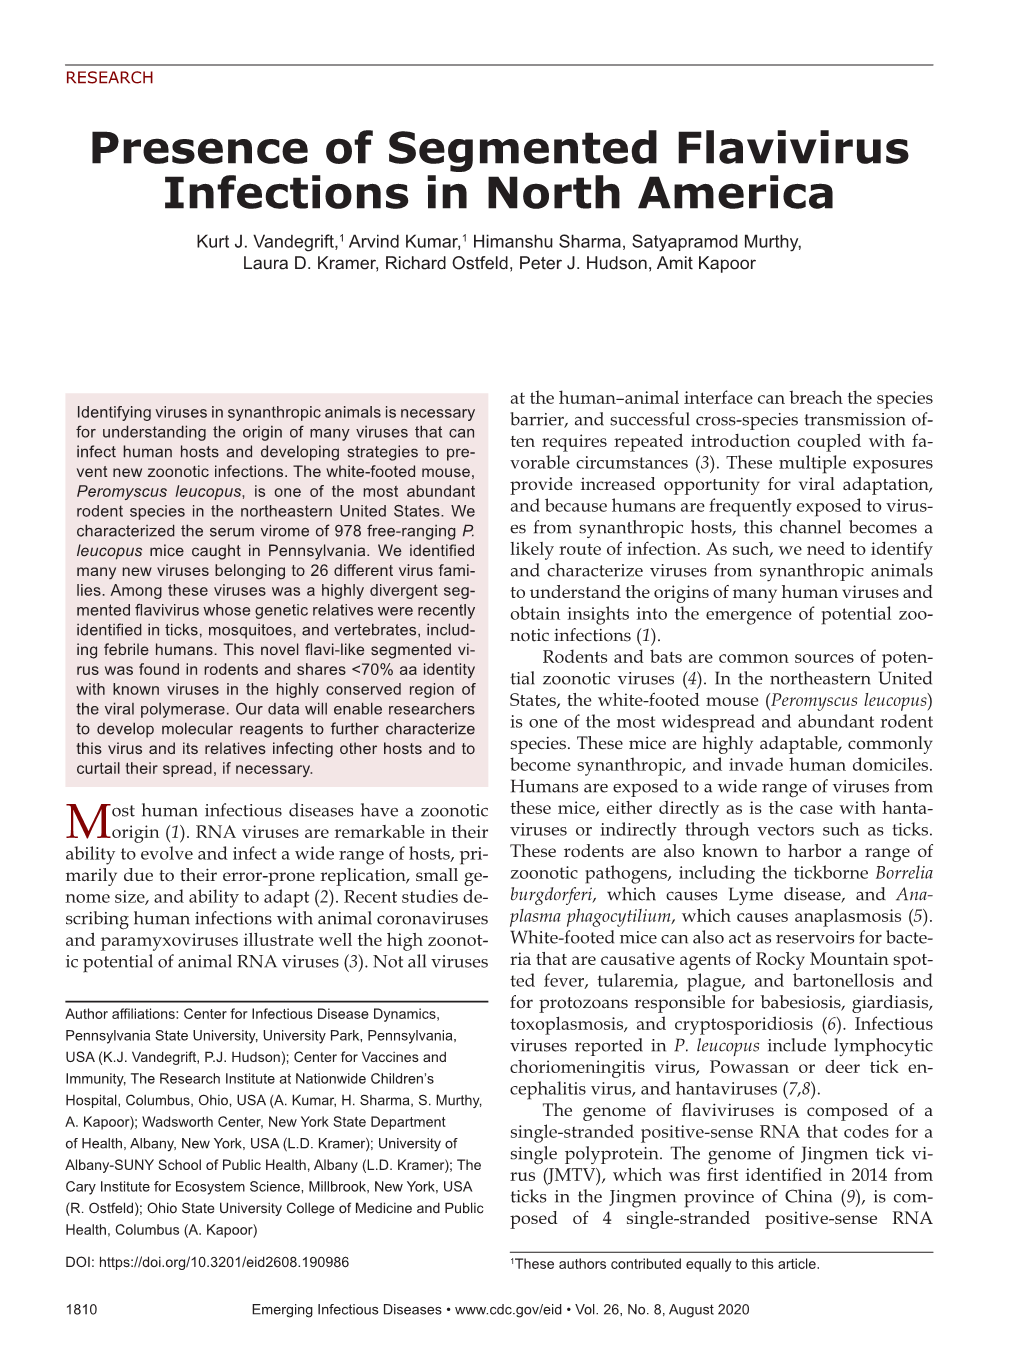 Presence of Segmented Flavivirus Infections in North America Kurt J